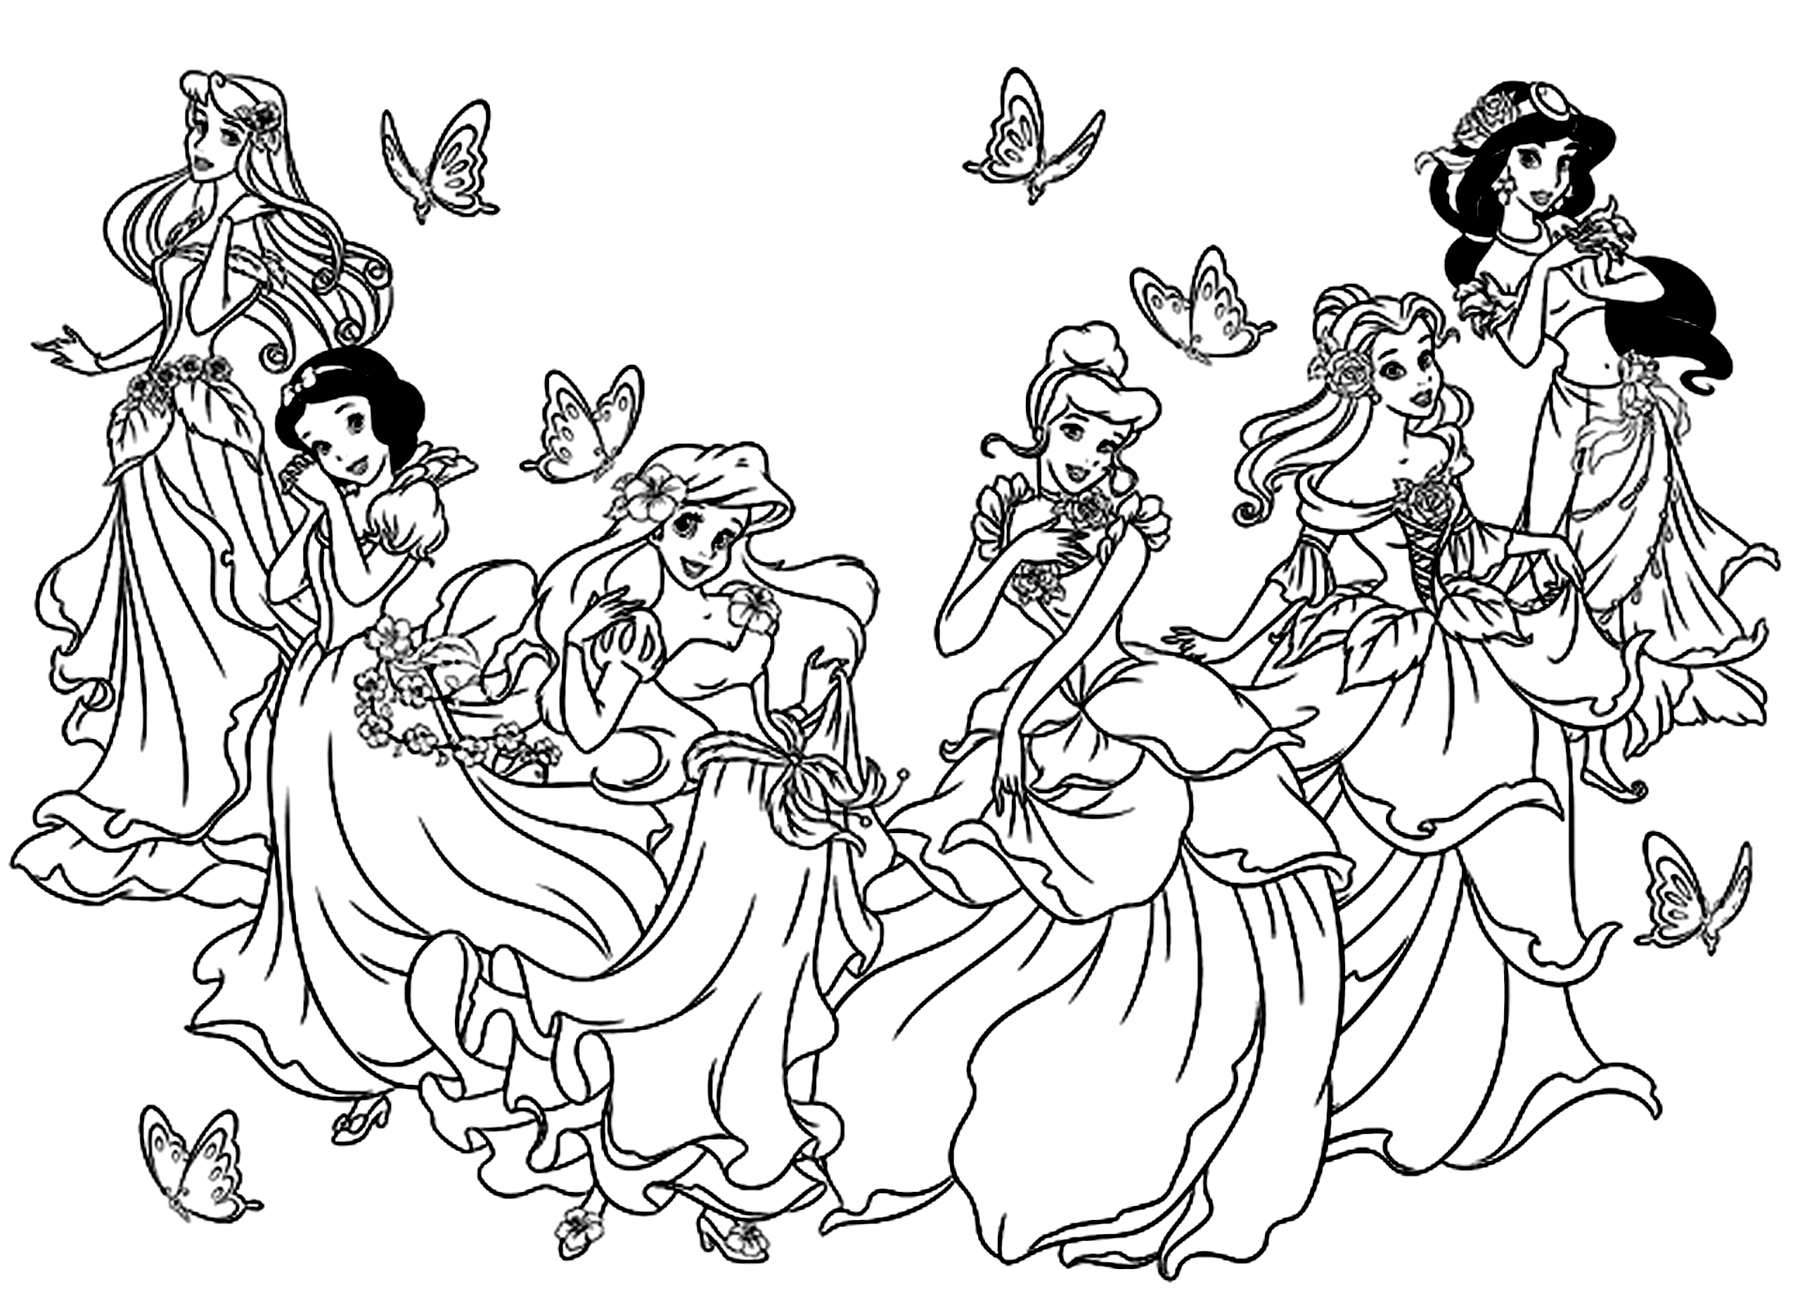 Todas las Princesas Disney en una página para colorear. Blancanieves, Cenicienta, Aurora (La Bella Durmiente), Ariel (La Sirenita), Bella (La Bella y la Bestia) , Jasmine (Aladino).Estas princesas no aparecen en este dibujo: Pocahontas y Mulán.